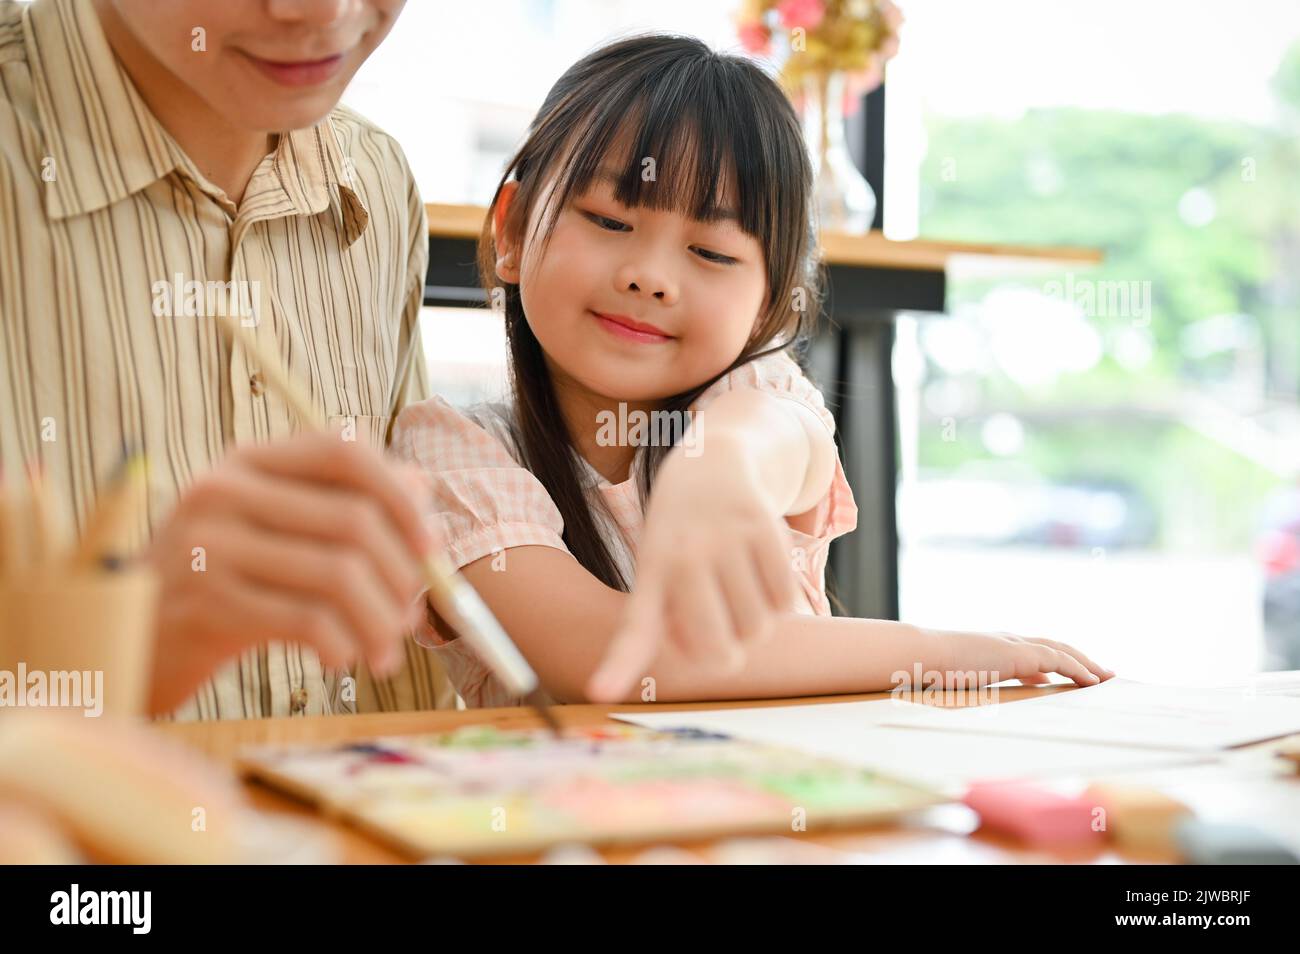 Glücklich und lächelnd junge asiatische Mädchen genießen Malerei Aquarell mit ihrem Vater auf dem Kind Kunst-Workshop. Close-up Bild Stockfoto